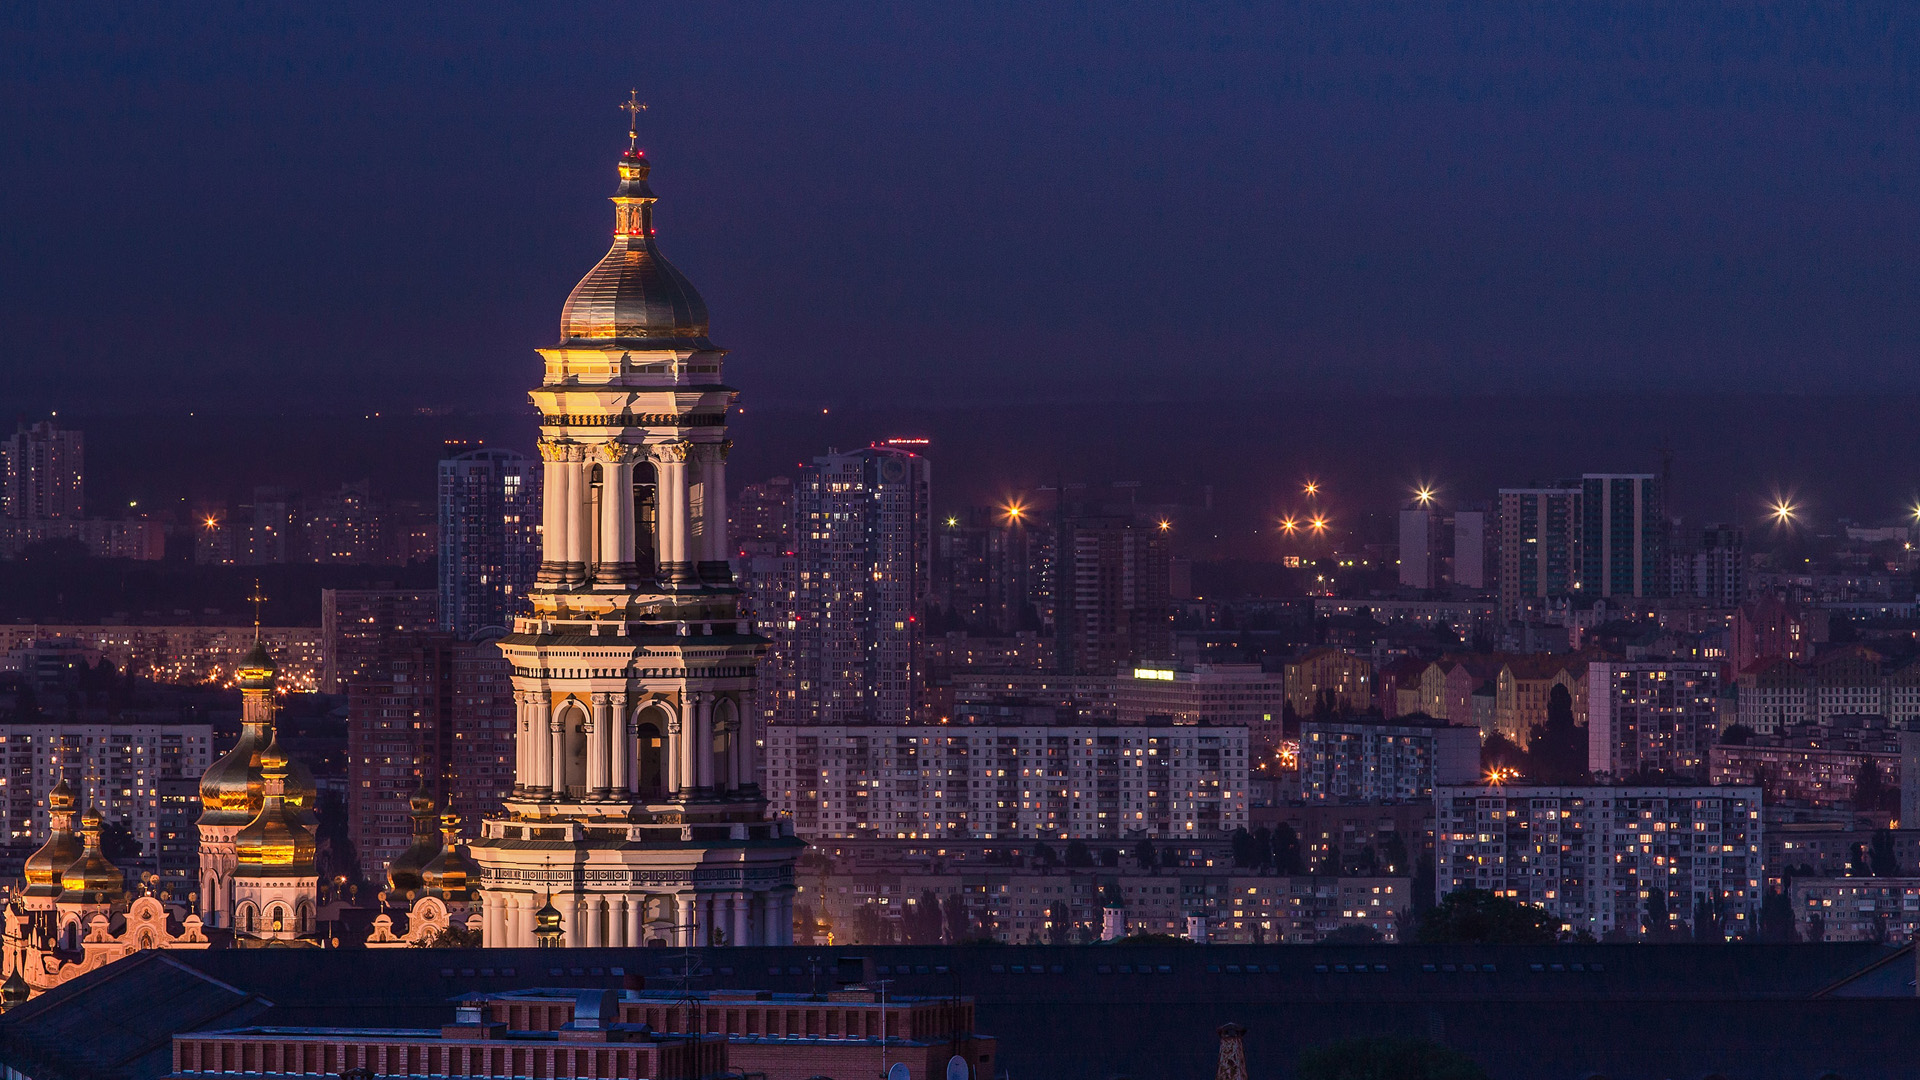 Church tower at night in Kyiv Ukraine